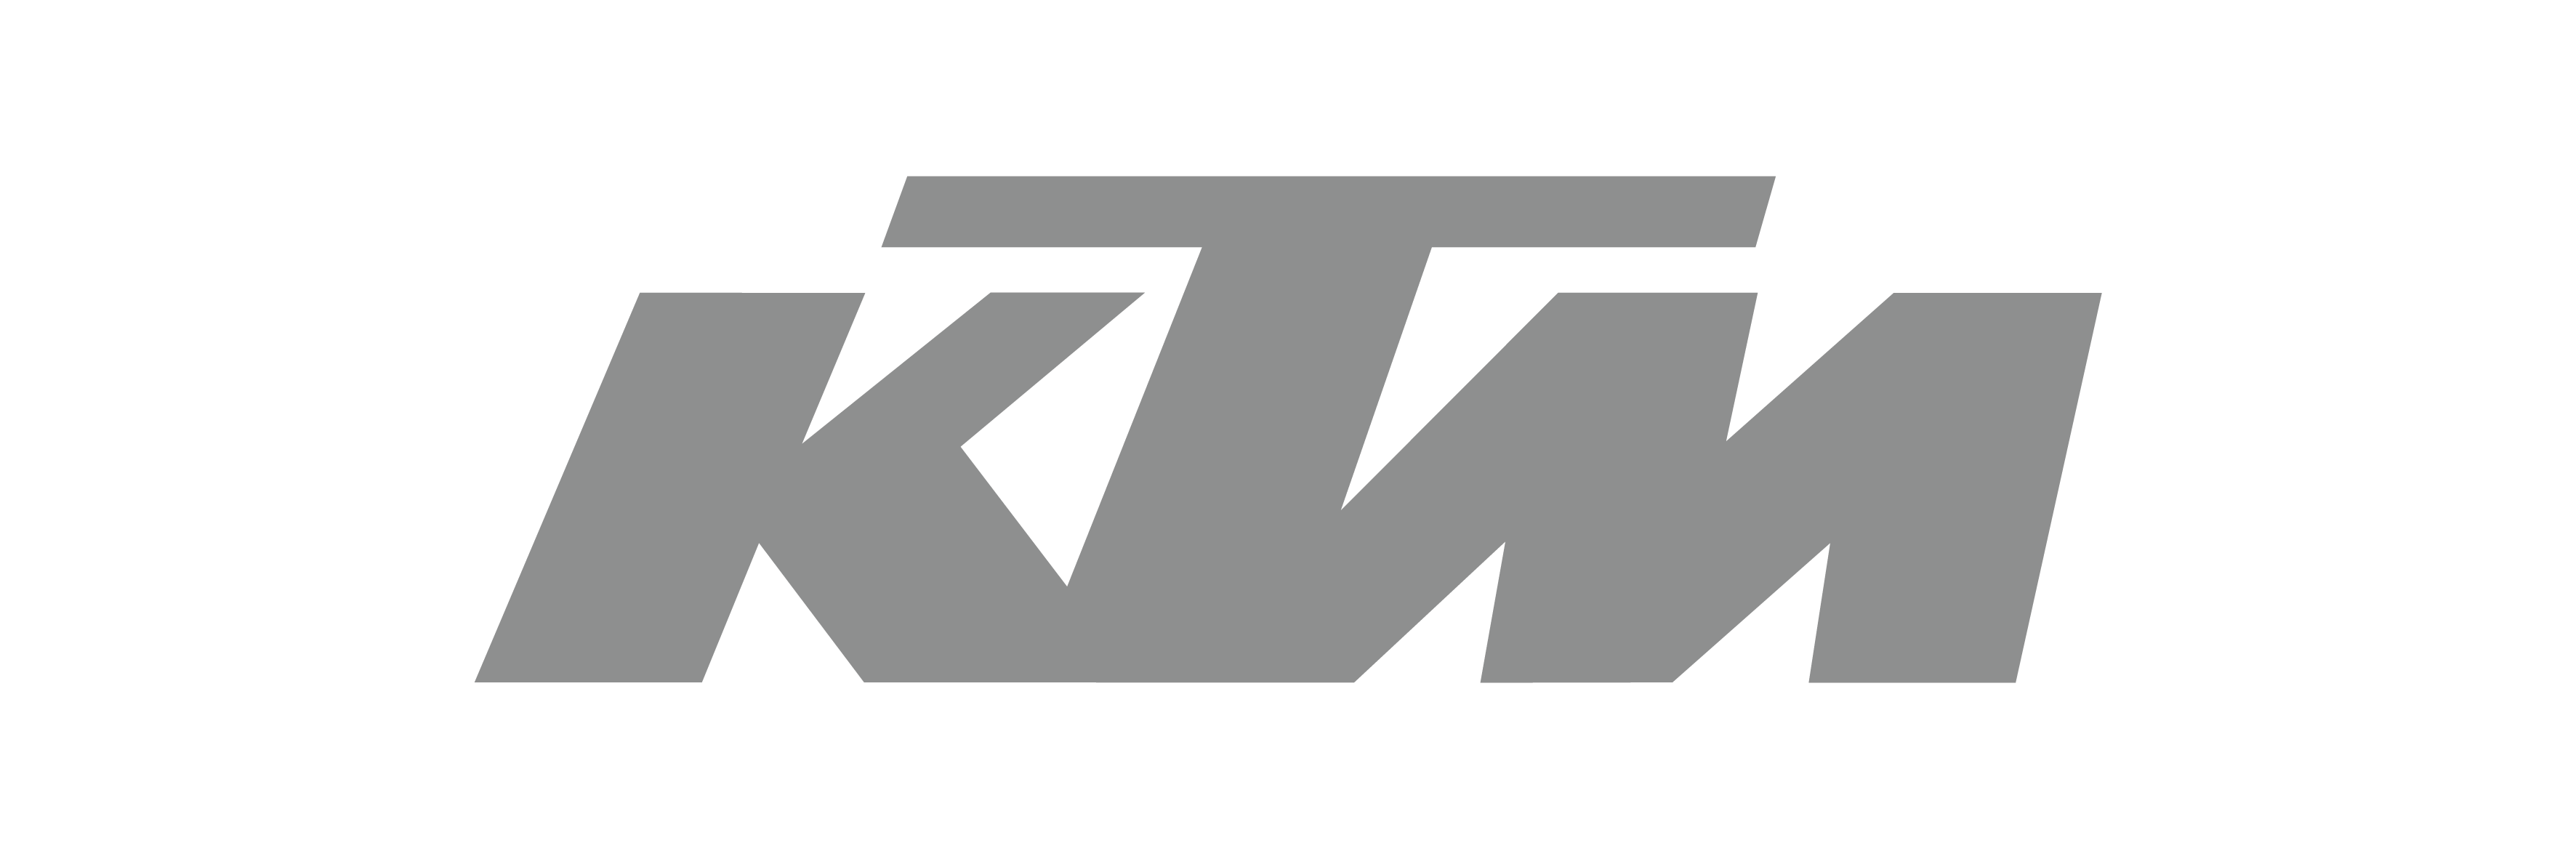 KTM Motorcycle